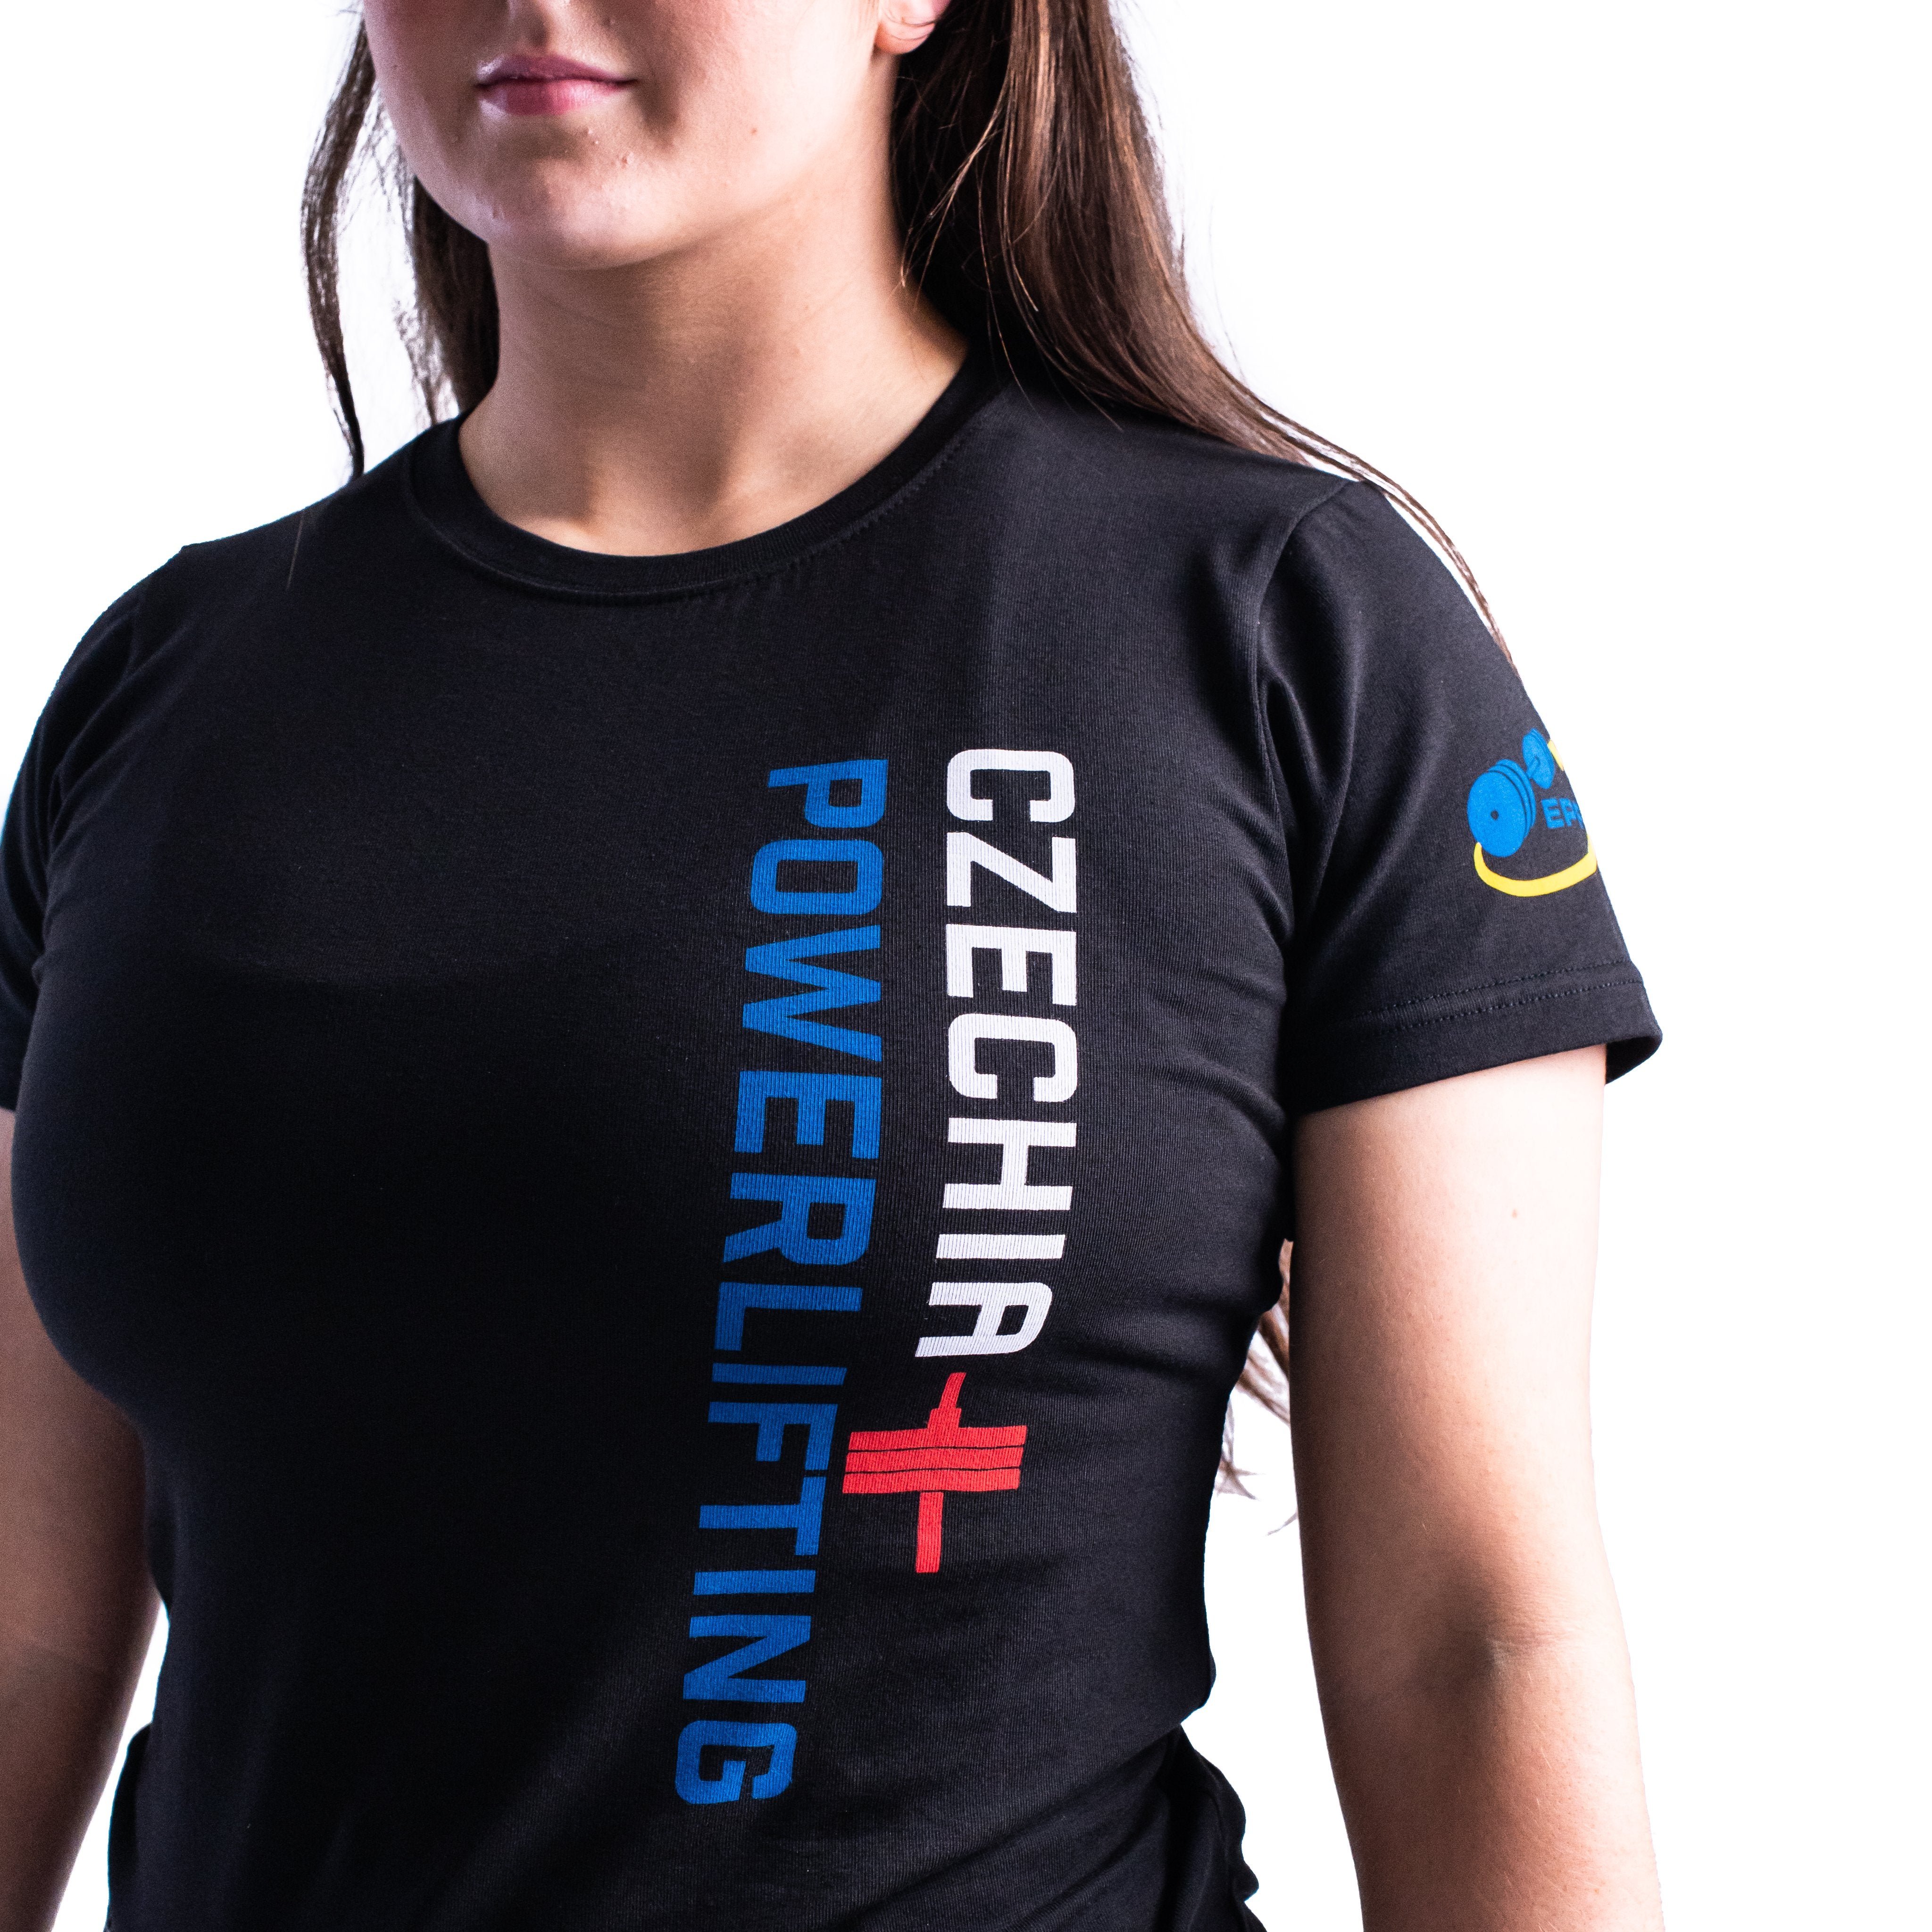 EPF Czechia Powerlifting 2021 Bar Grip Women's Shirt